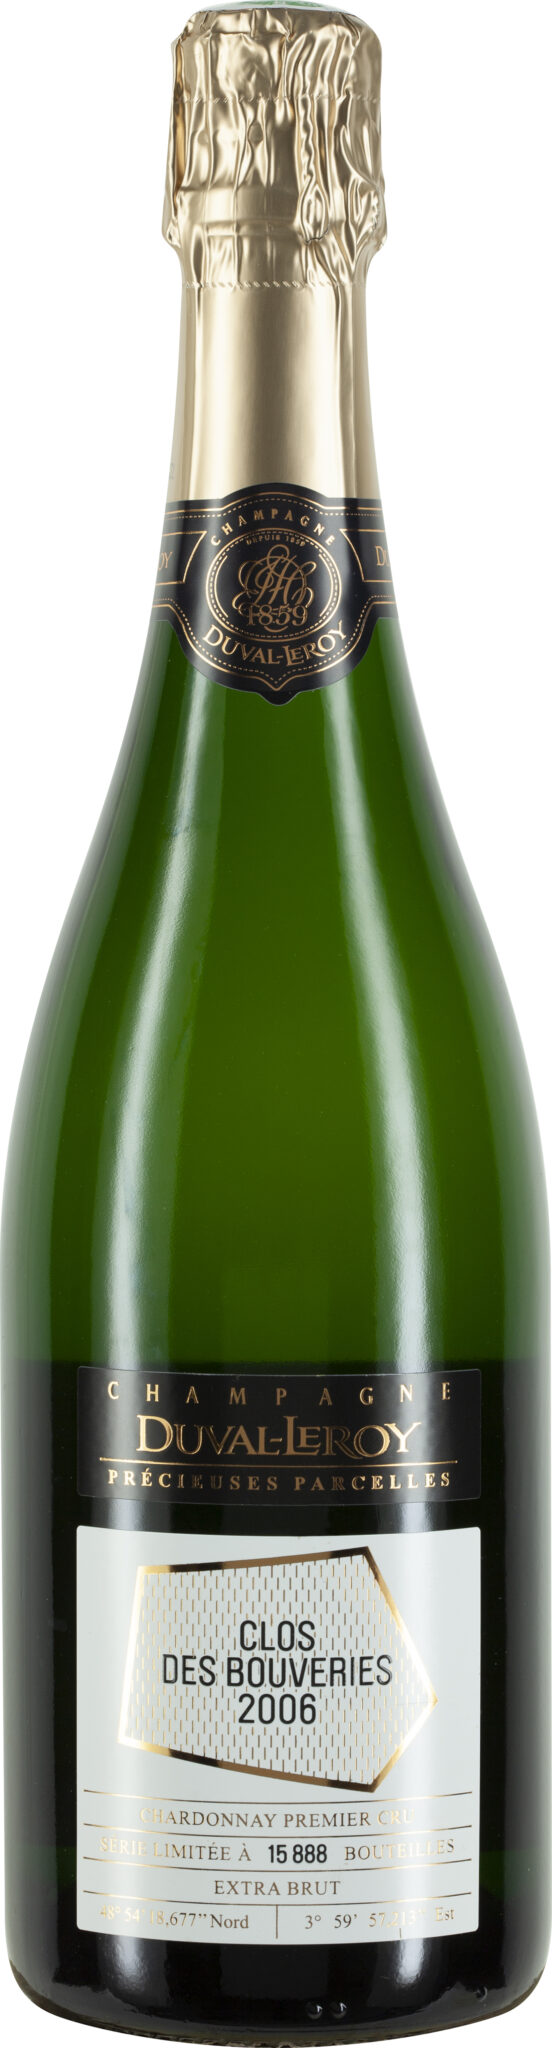 Duval-Leroy Précieuses Parcelles, Champagne Extra Brut Chardonnay, Premier Cru Clos des Bouveries